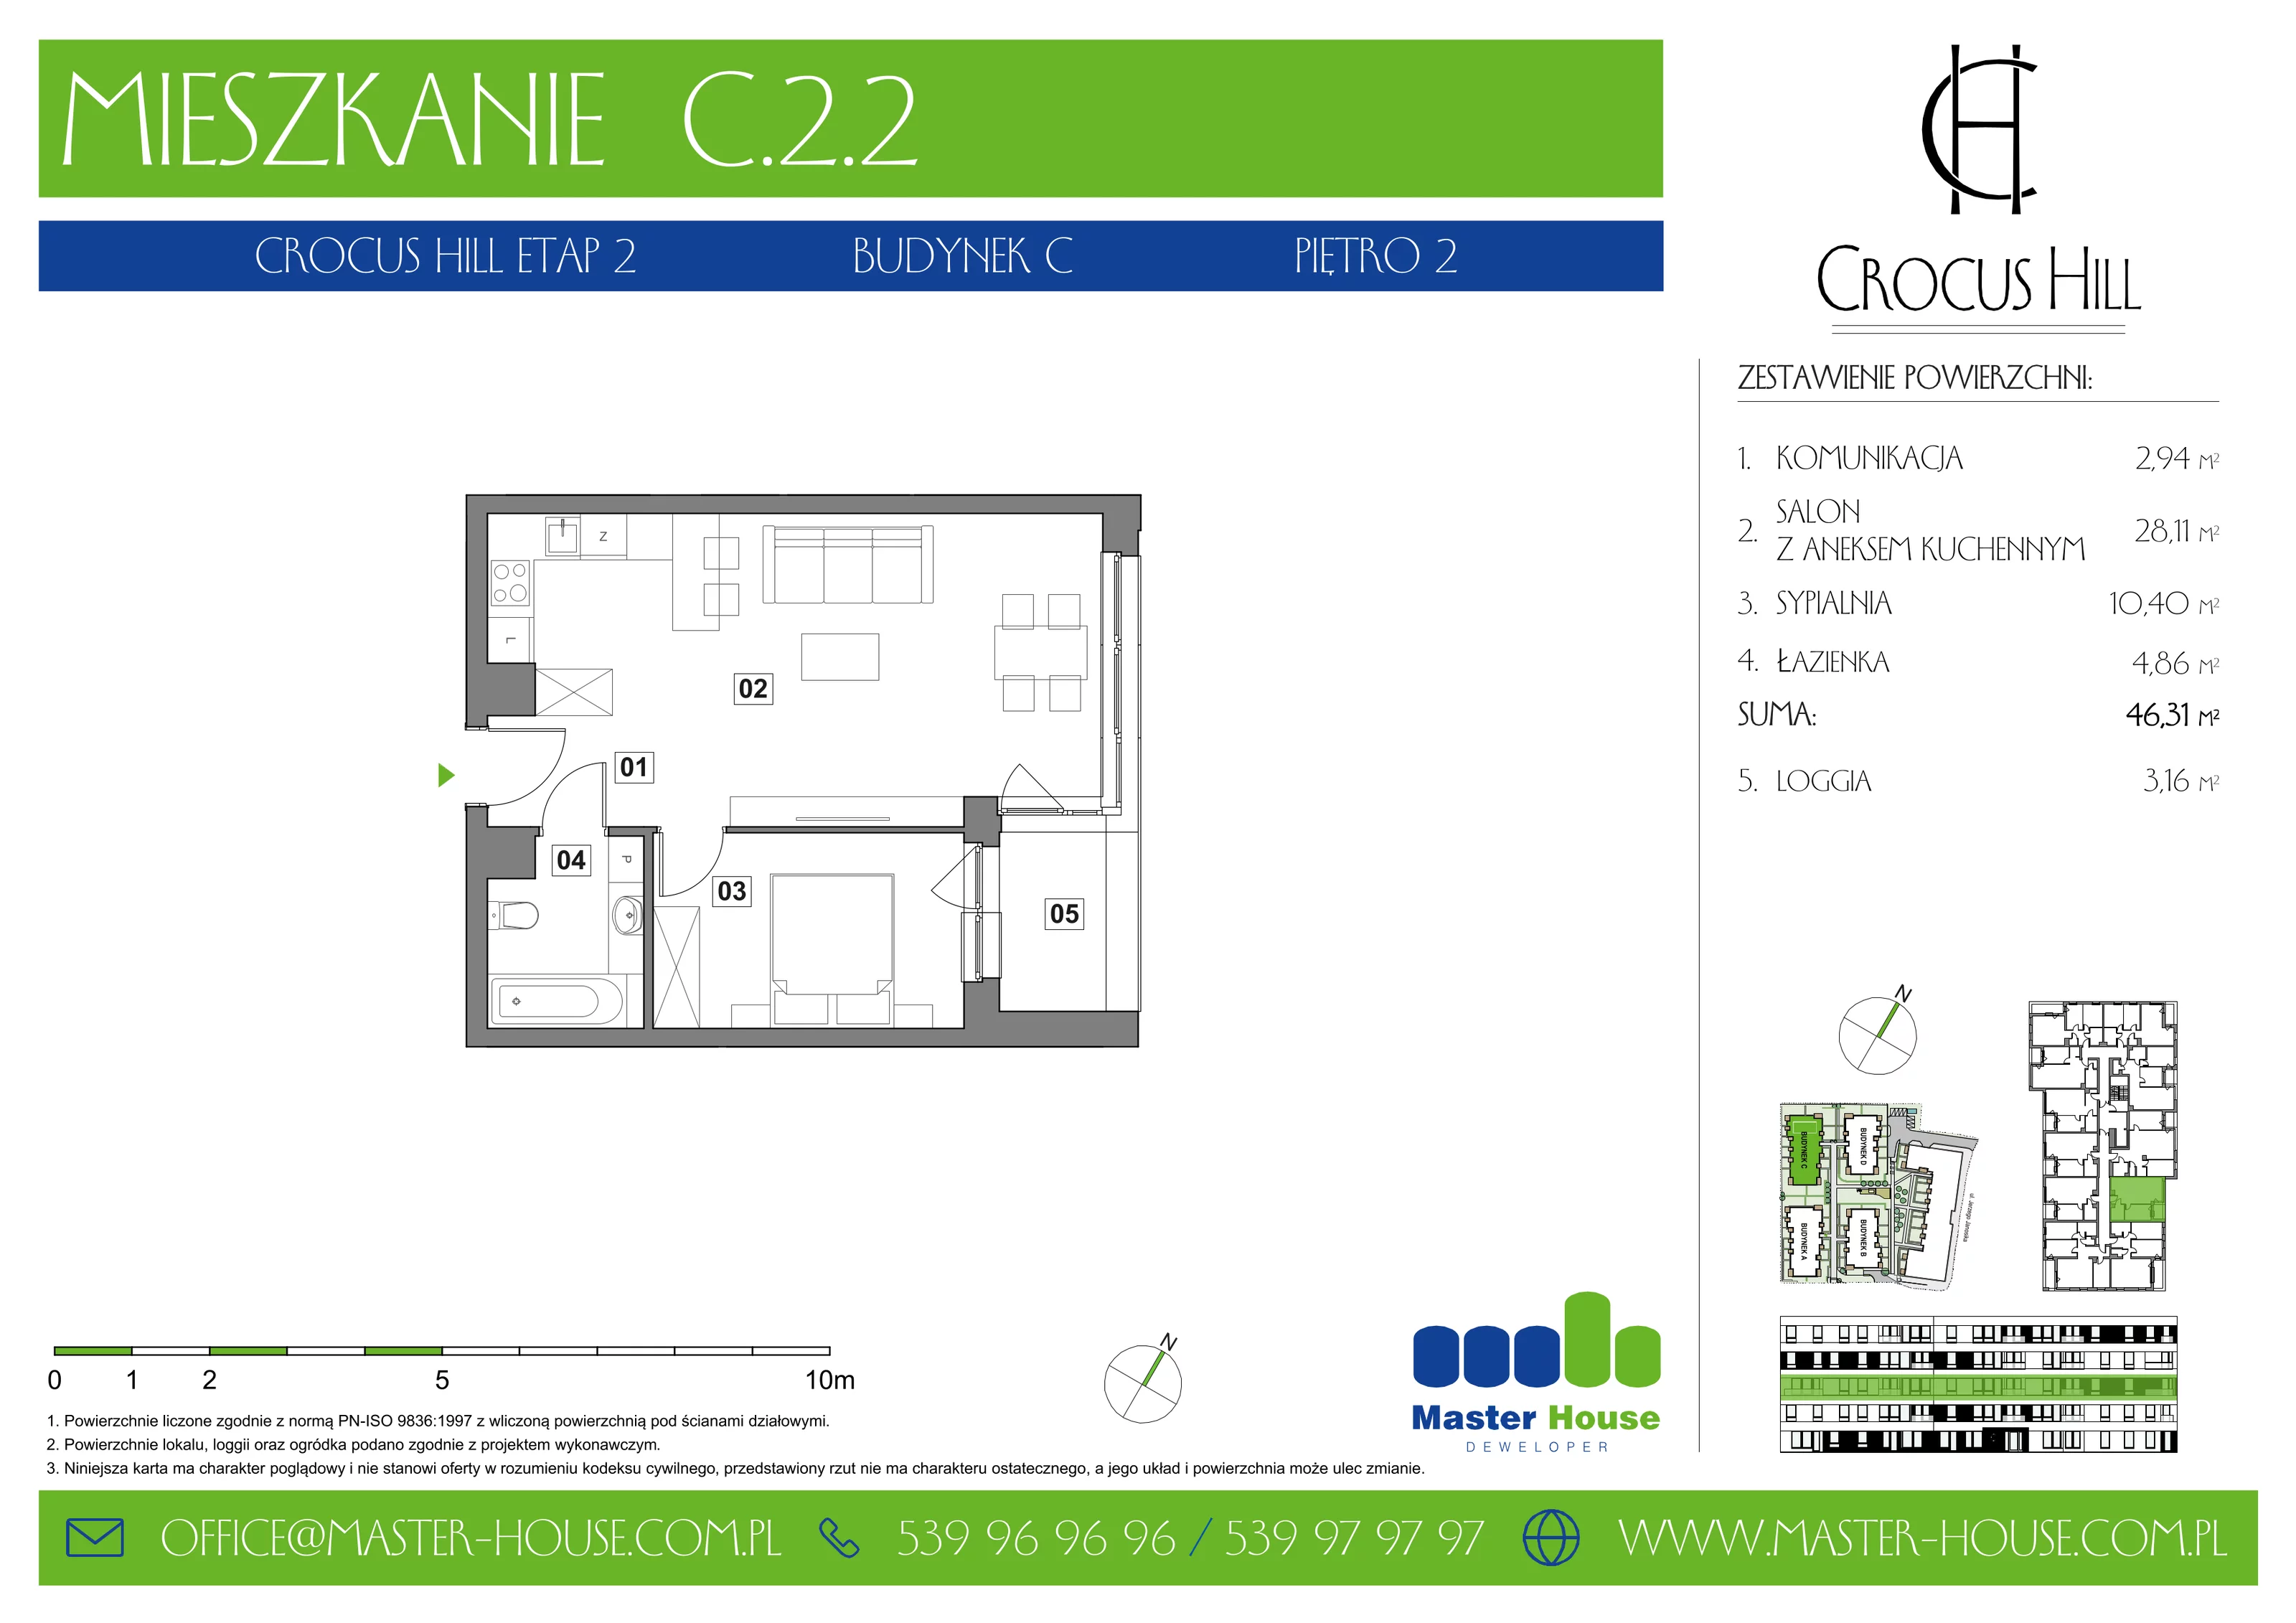 Mieszkanie 46,31 m², piętro 2, oferta nr C.2.2, Crocus Hill, Szczecin, Śródmieście, ul. Jerzego Janosika 2, 2A, 3, 3A